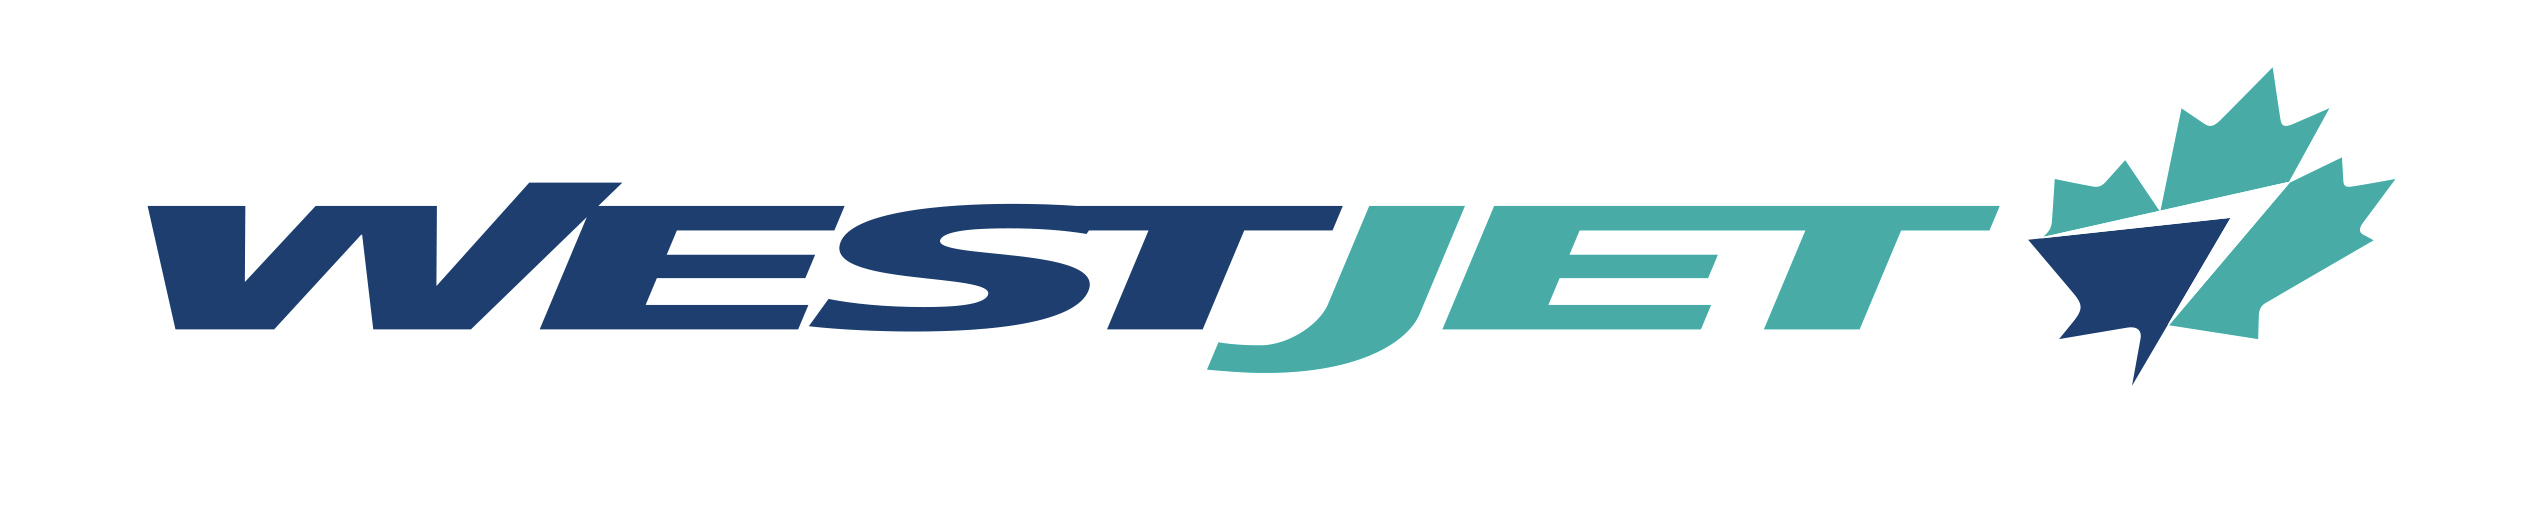 Westjet Airlines Logo PNG - 108543